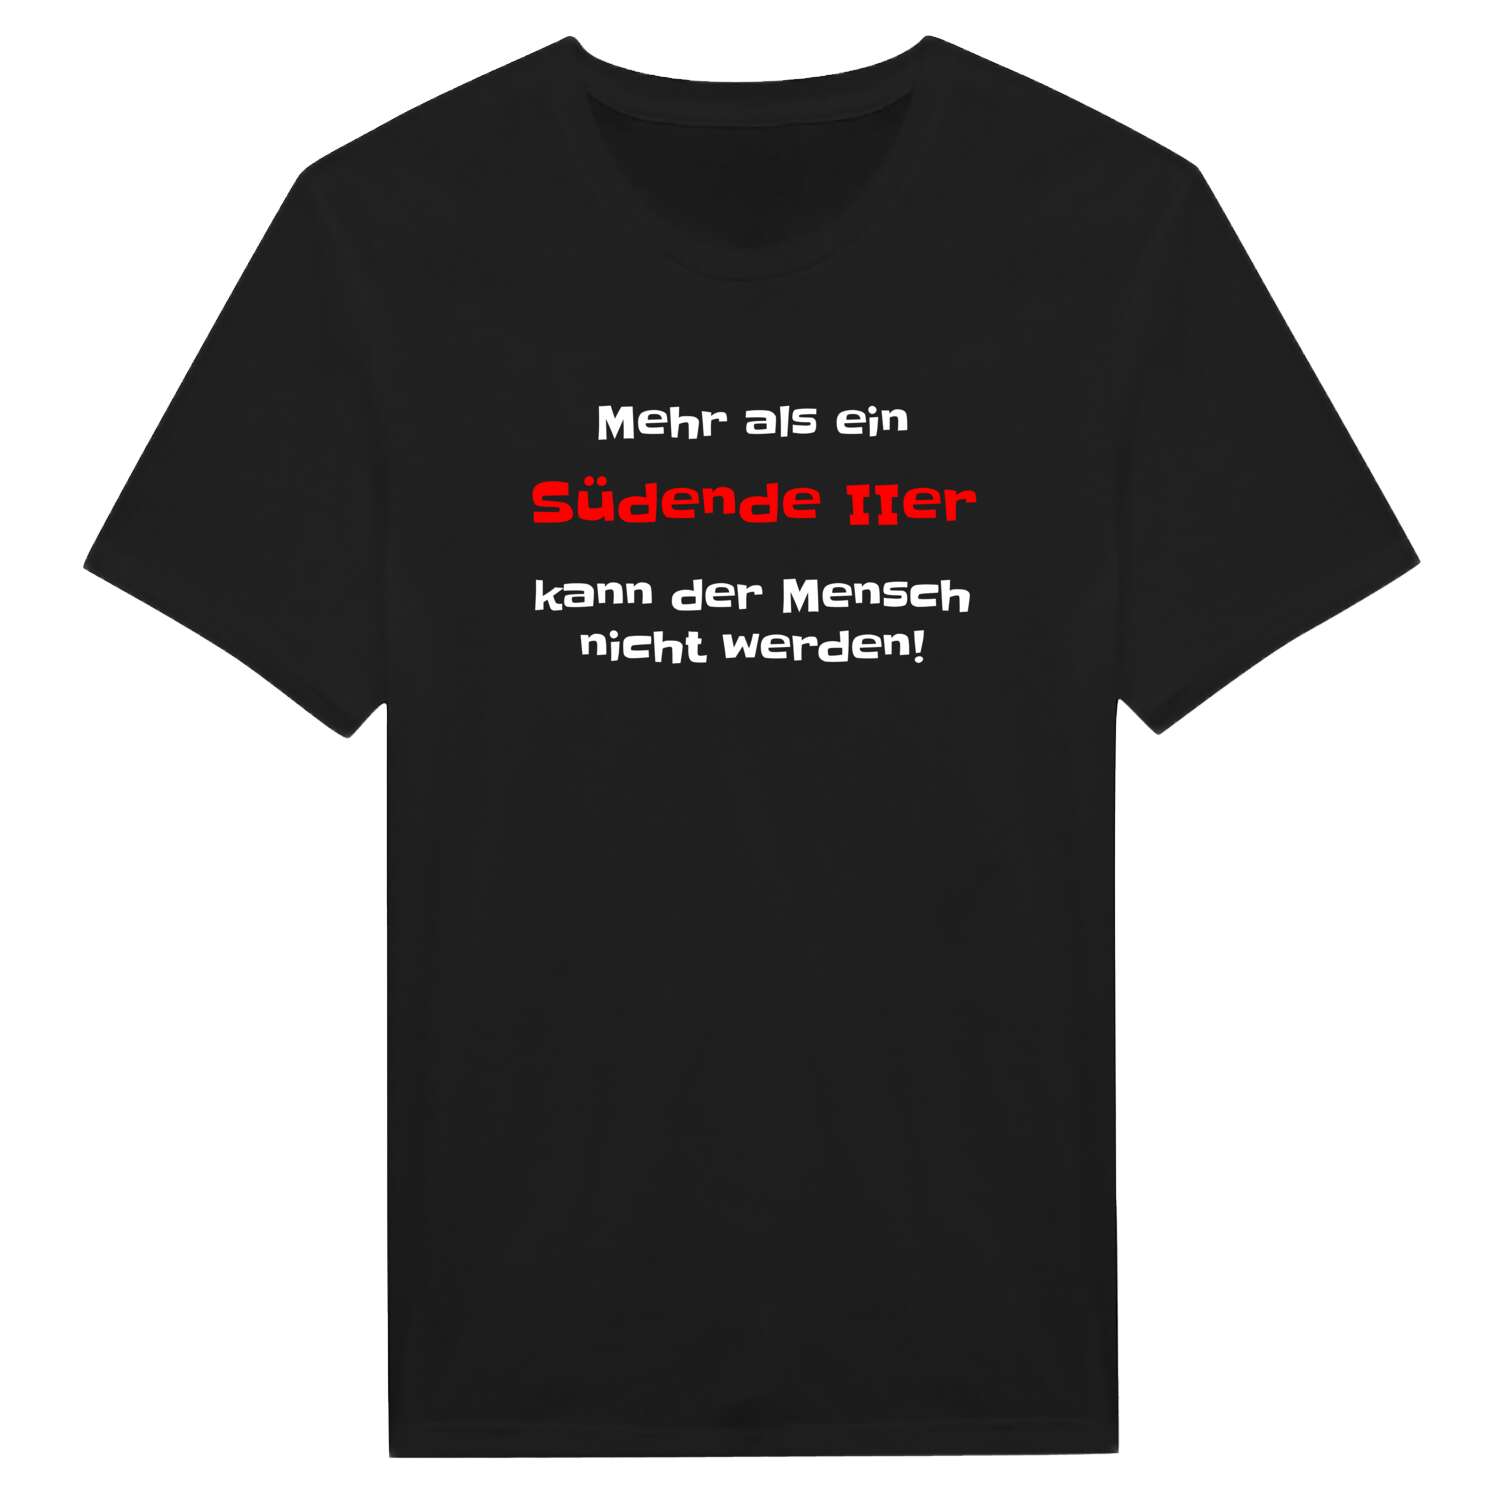 Südende II T-Shirt »Mehr als ein«